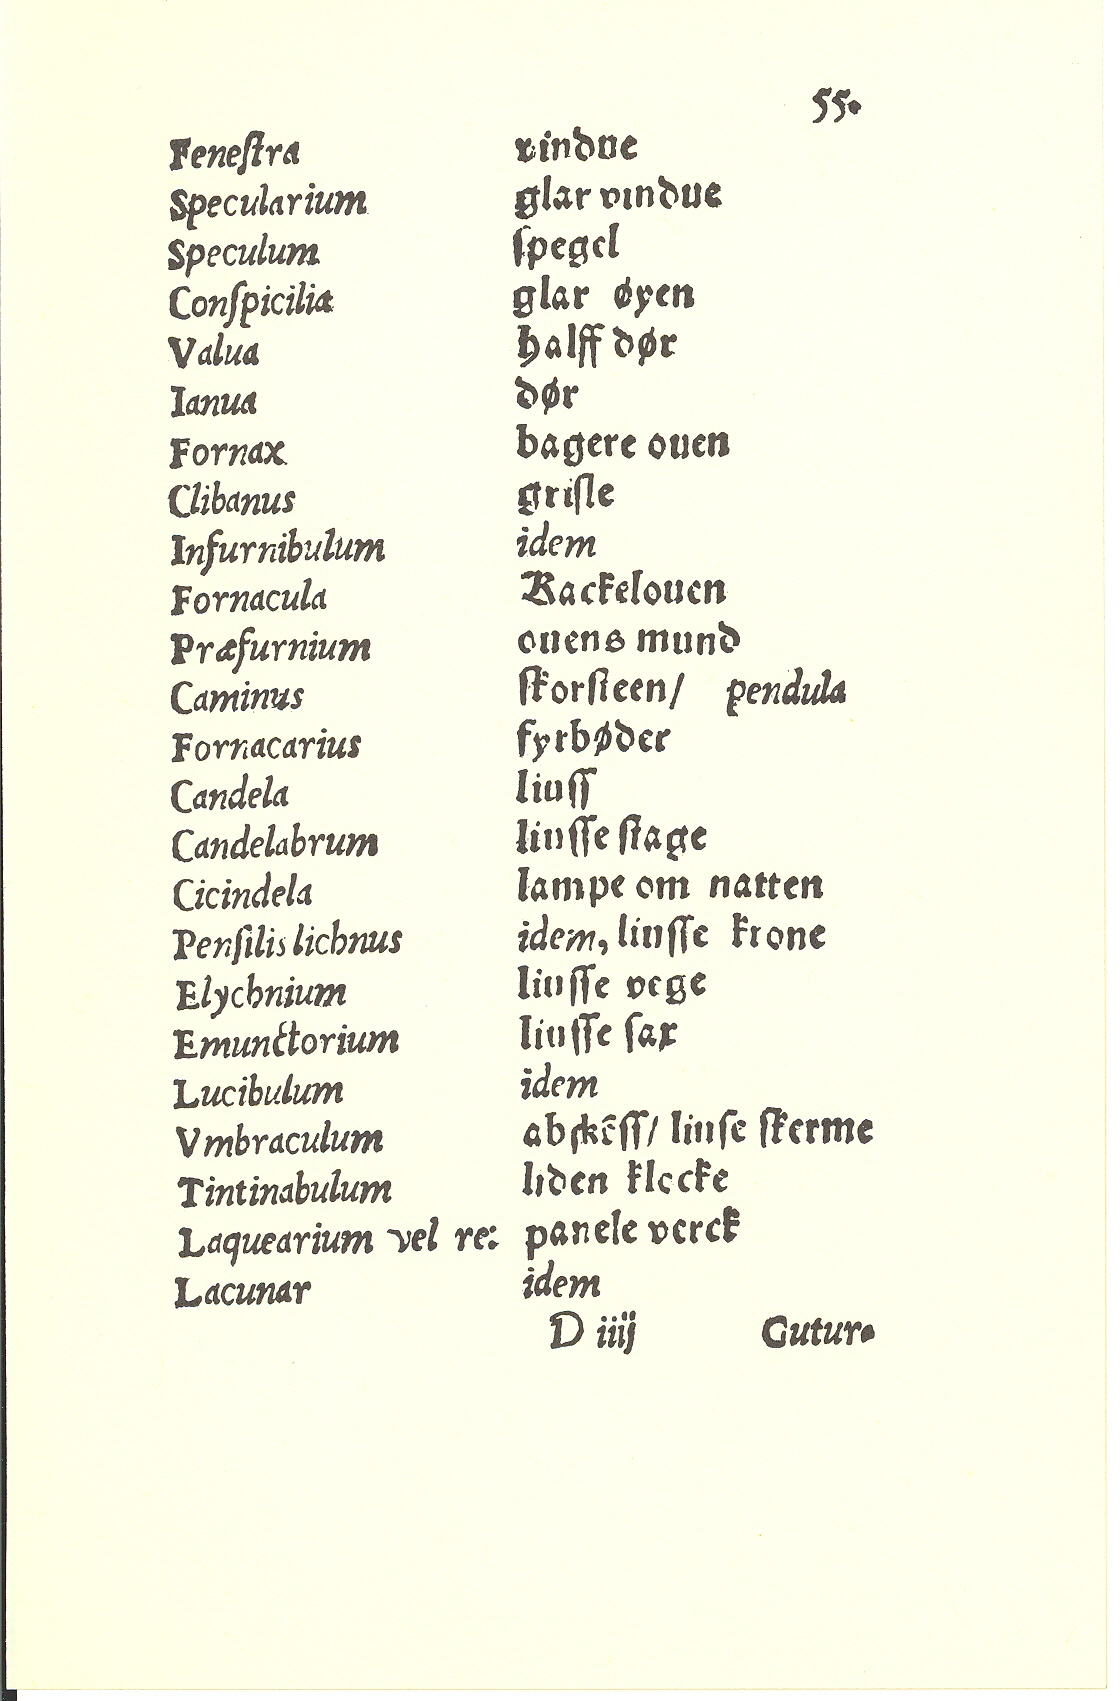 Tursen 1561, Side: 55